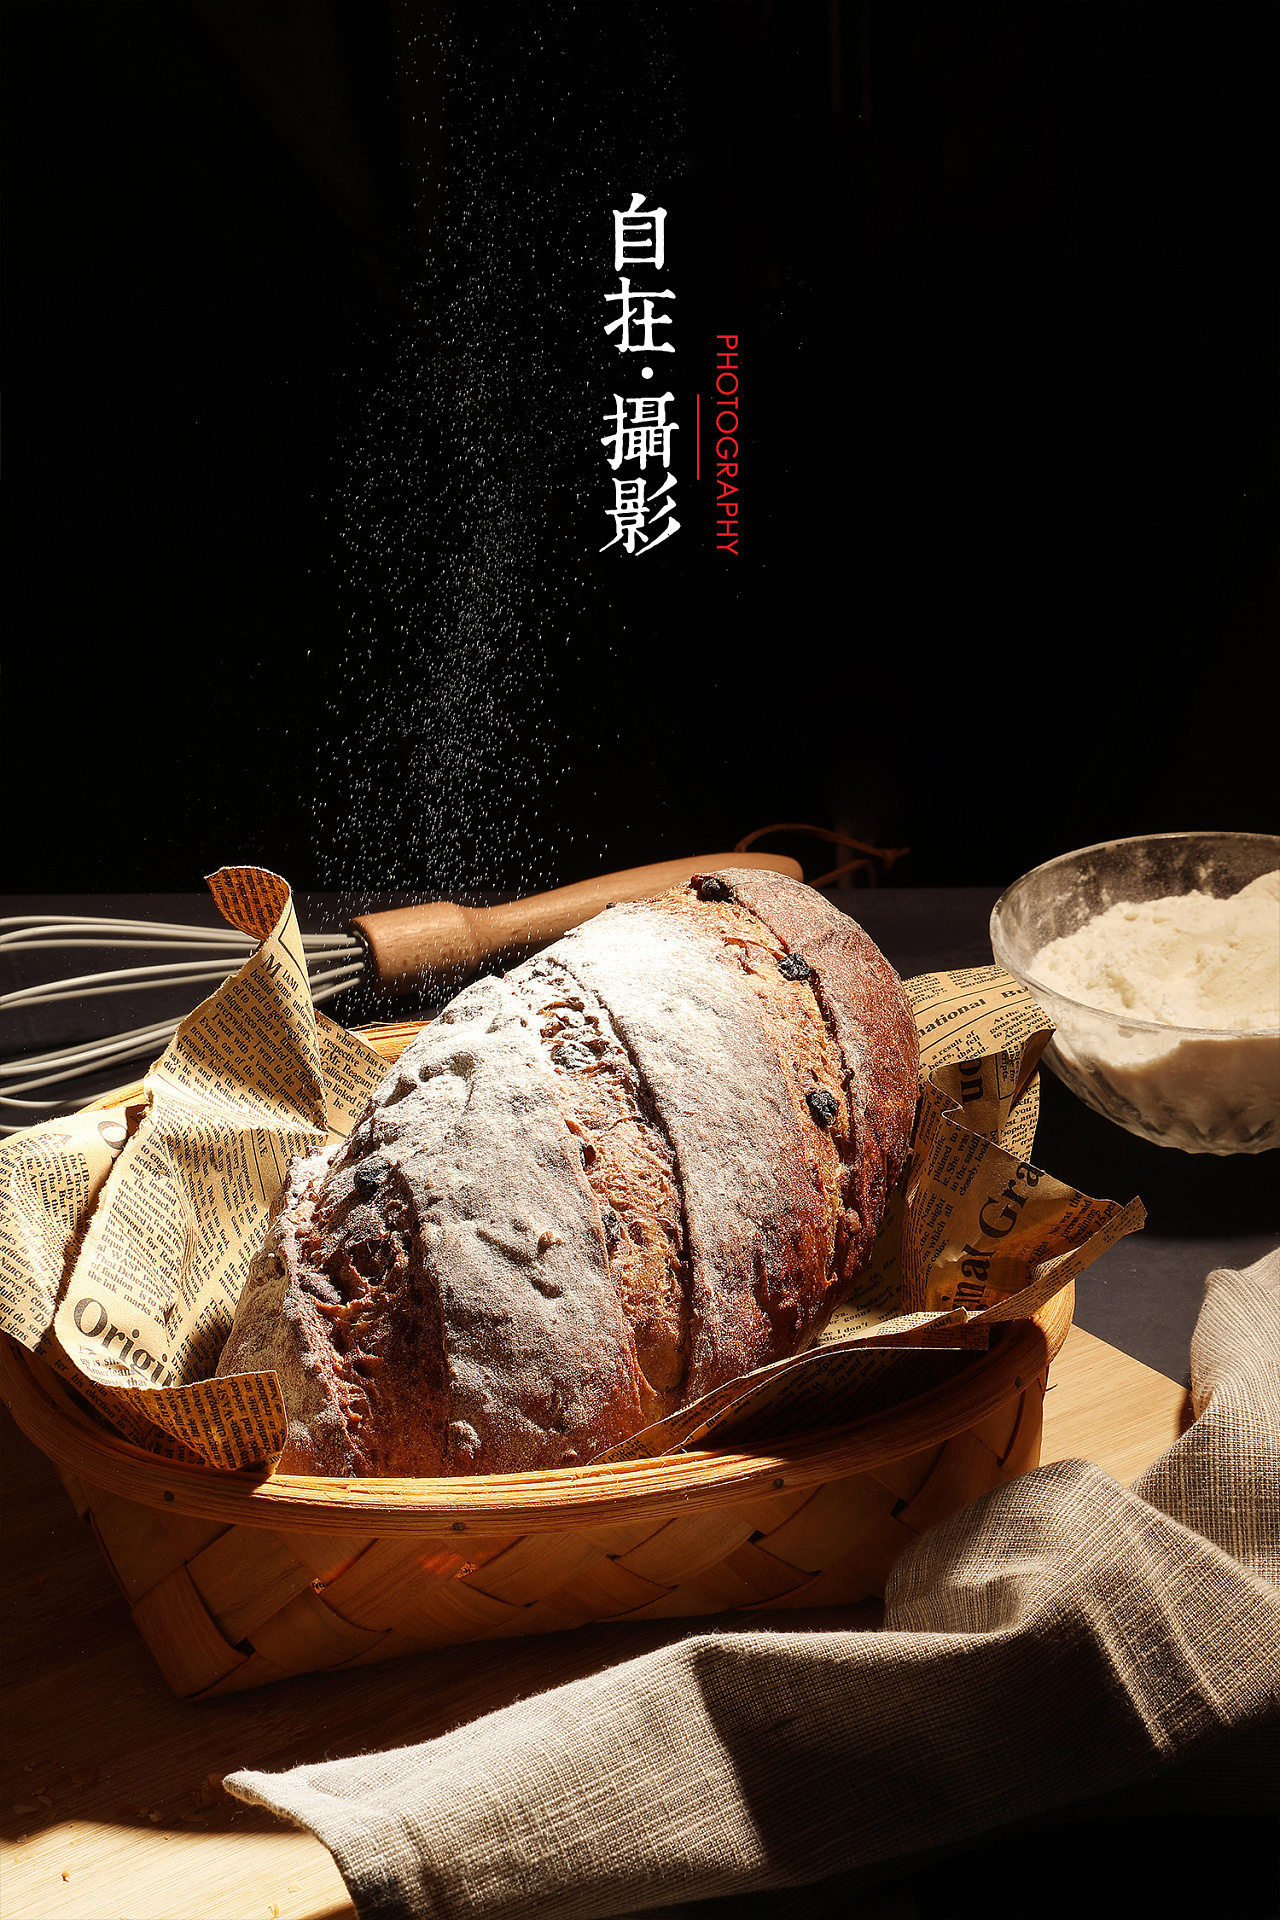 软欧欧式/高级面包 - 学做法式西点-面包烘焙_蛋糕裱花_甜品糖水培训学校 - 广州烘趣教育科技有限公司